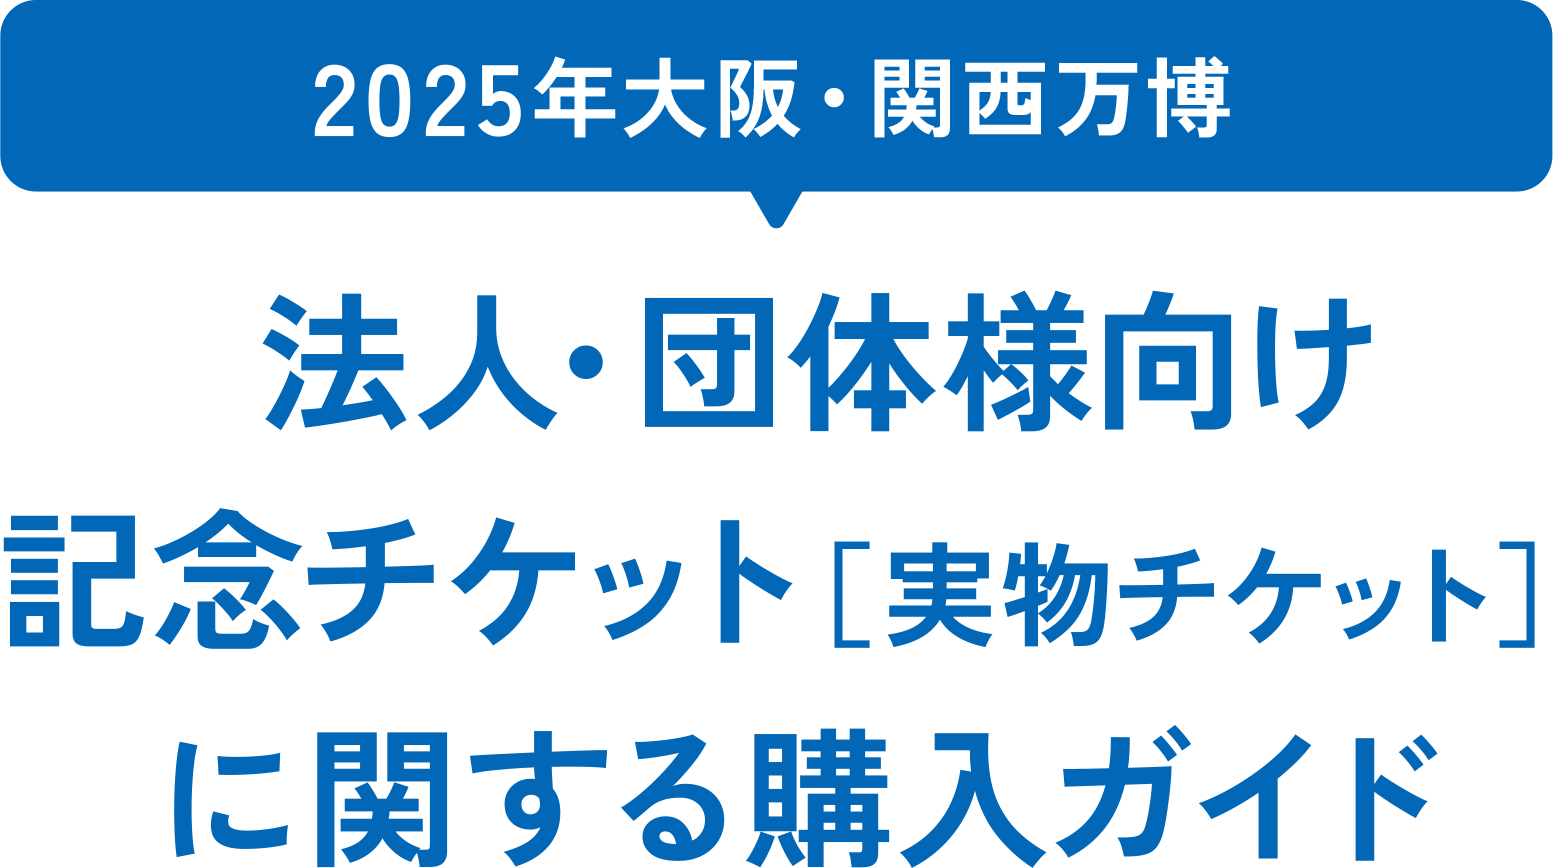 2025年大阪・関西万博 法人・団体様向け 記念チケット[実物チケット]に関する購入ガイド